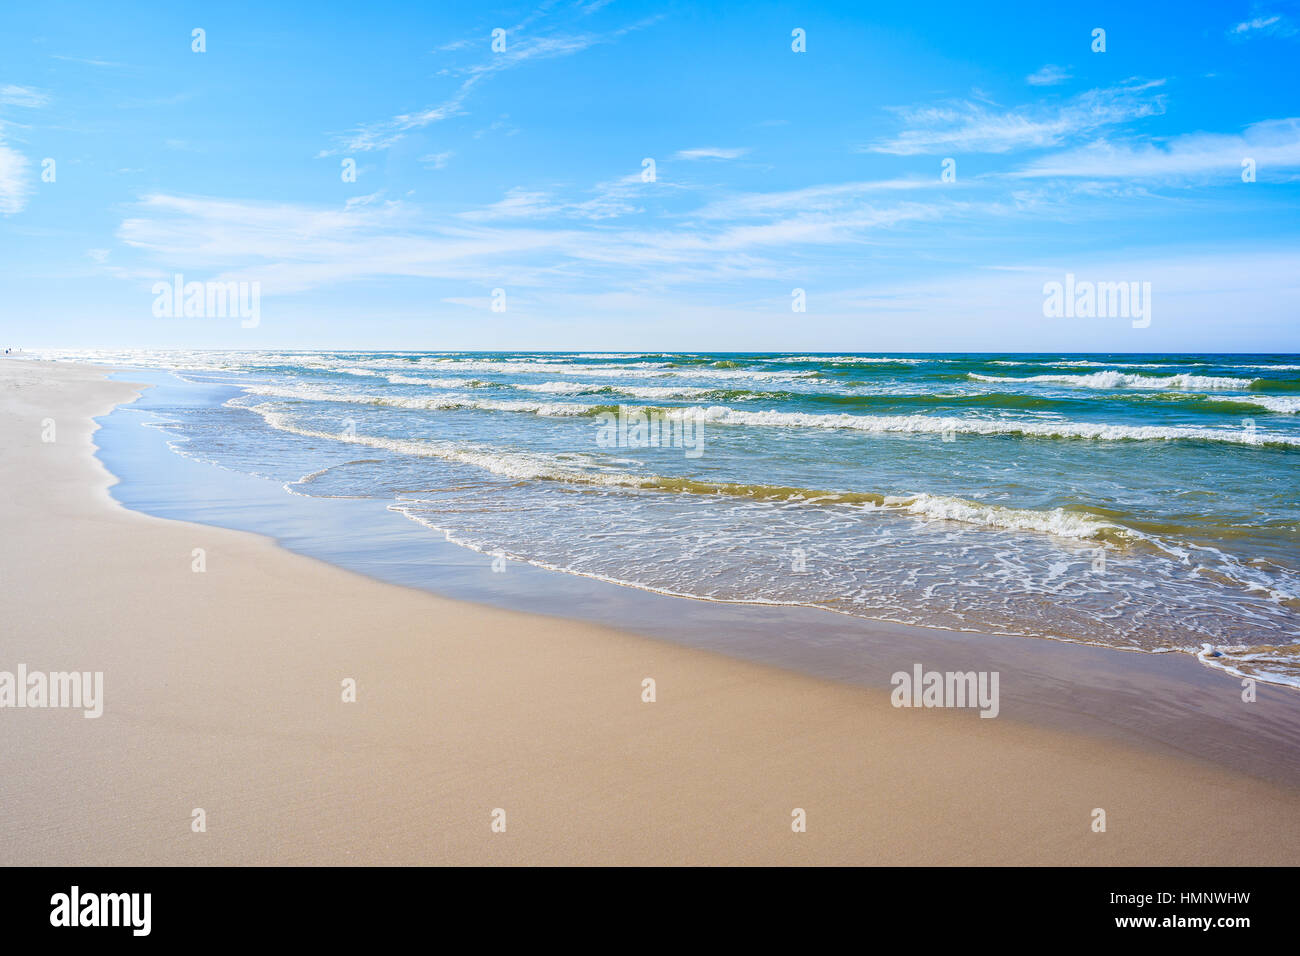 Les vagues de la mer sur la plage de sable idyllique Debki, mer Baltique, Pologne Banque D'Images